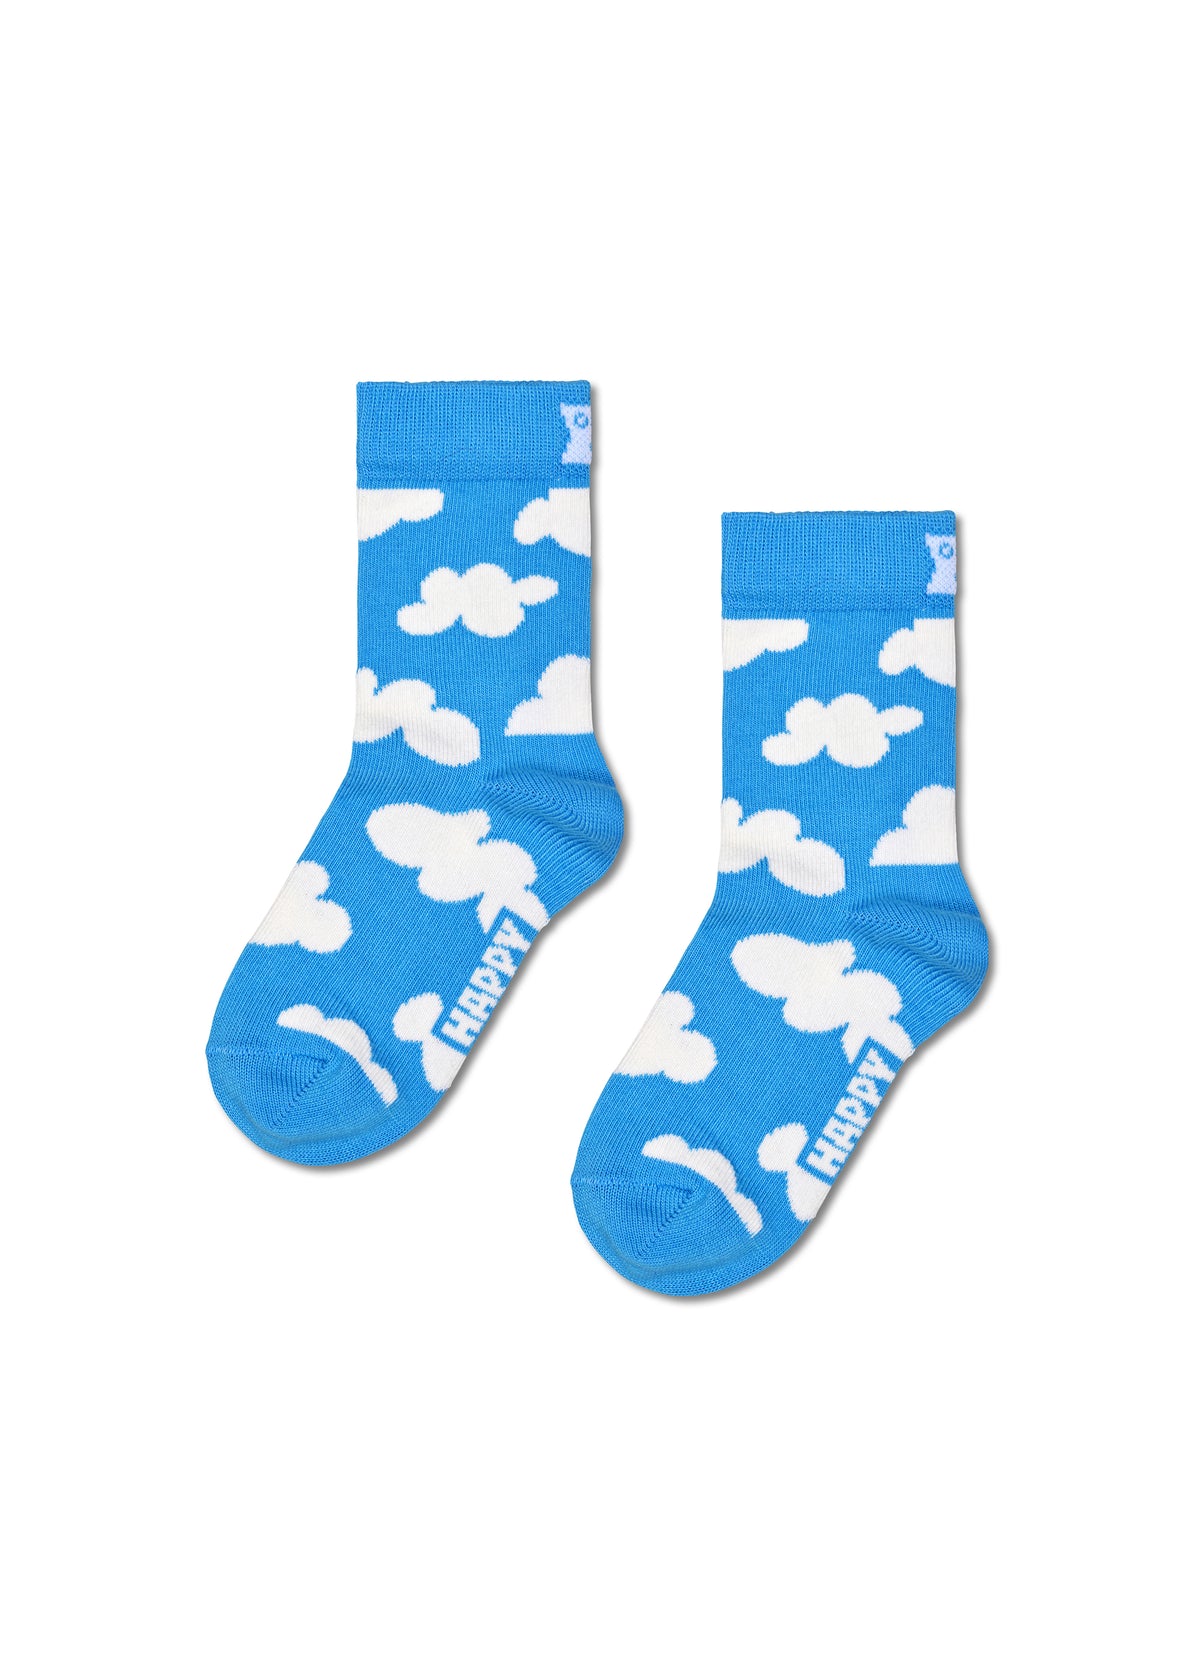 Children's socks - Cloudy Light Blue